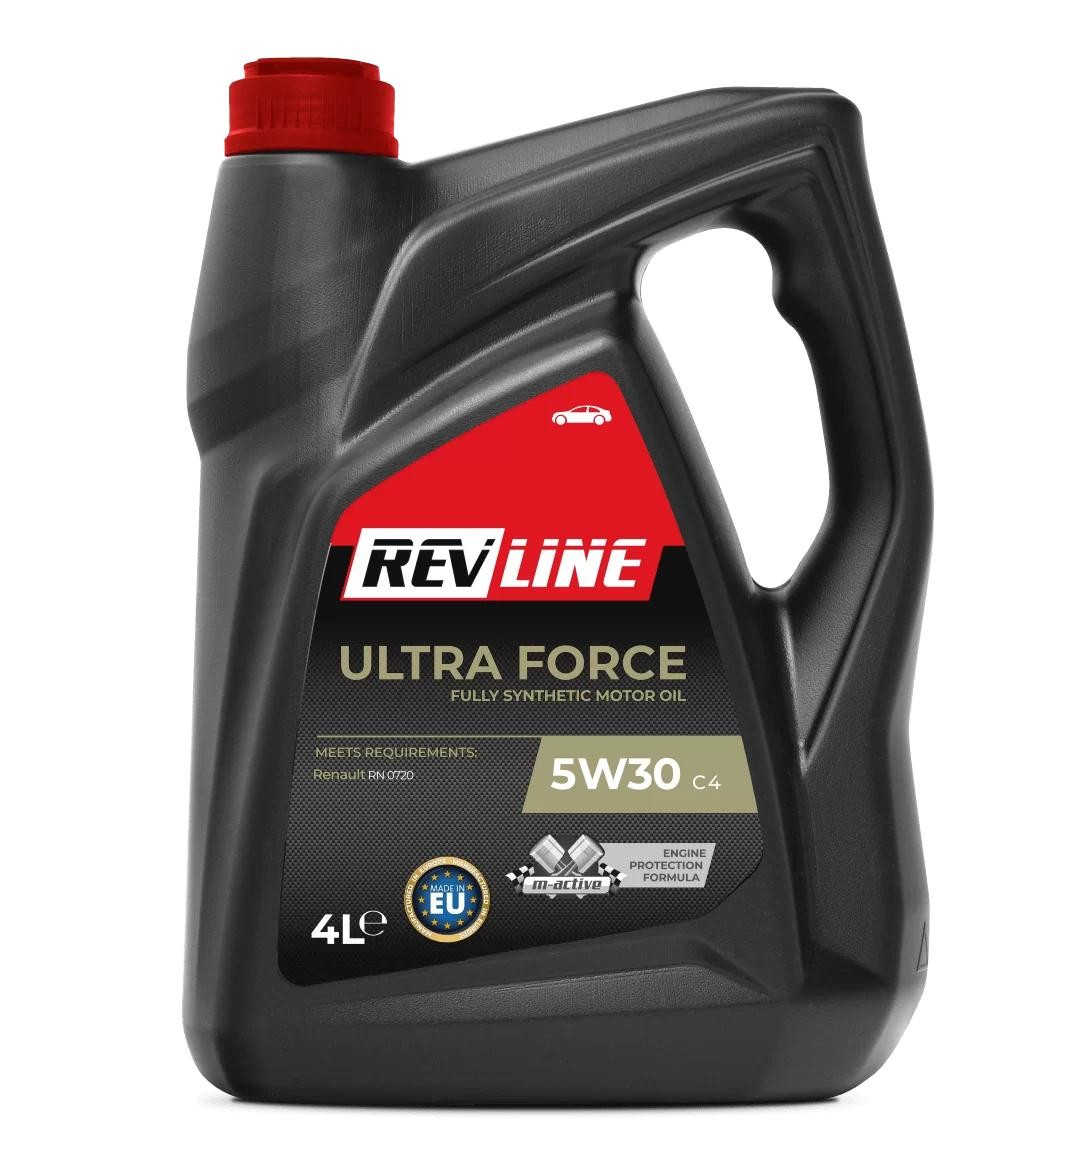 Automobile oil ACEA C4 REVLINE - 5901797927196 Ultra Force, C4